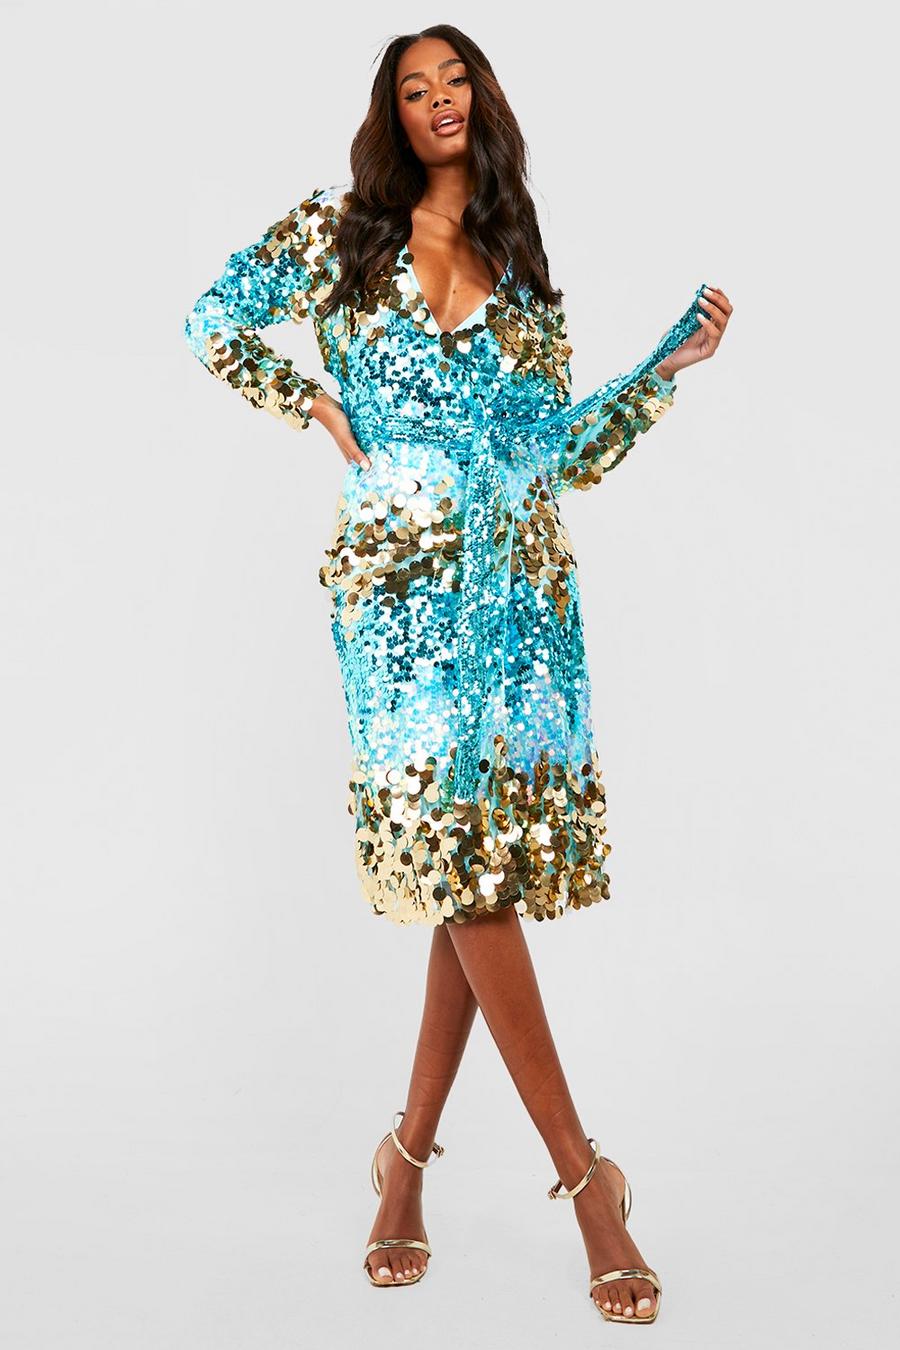 Sparkly Summer Dresses | vlr.eng.br